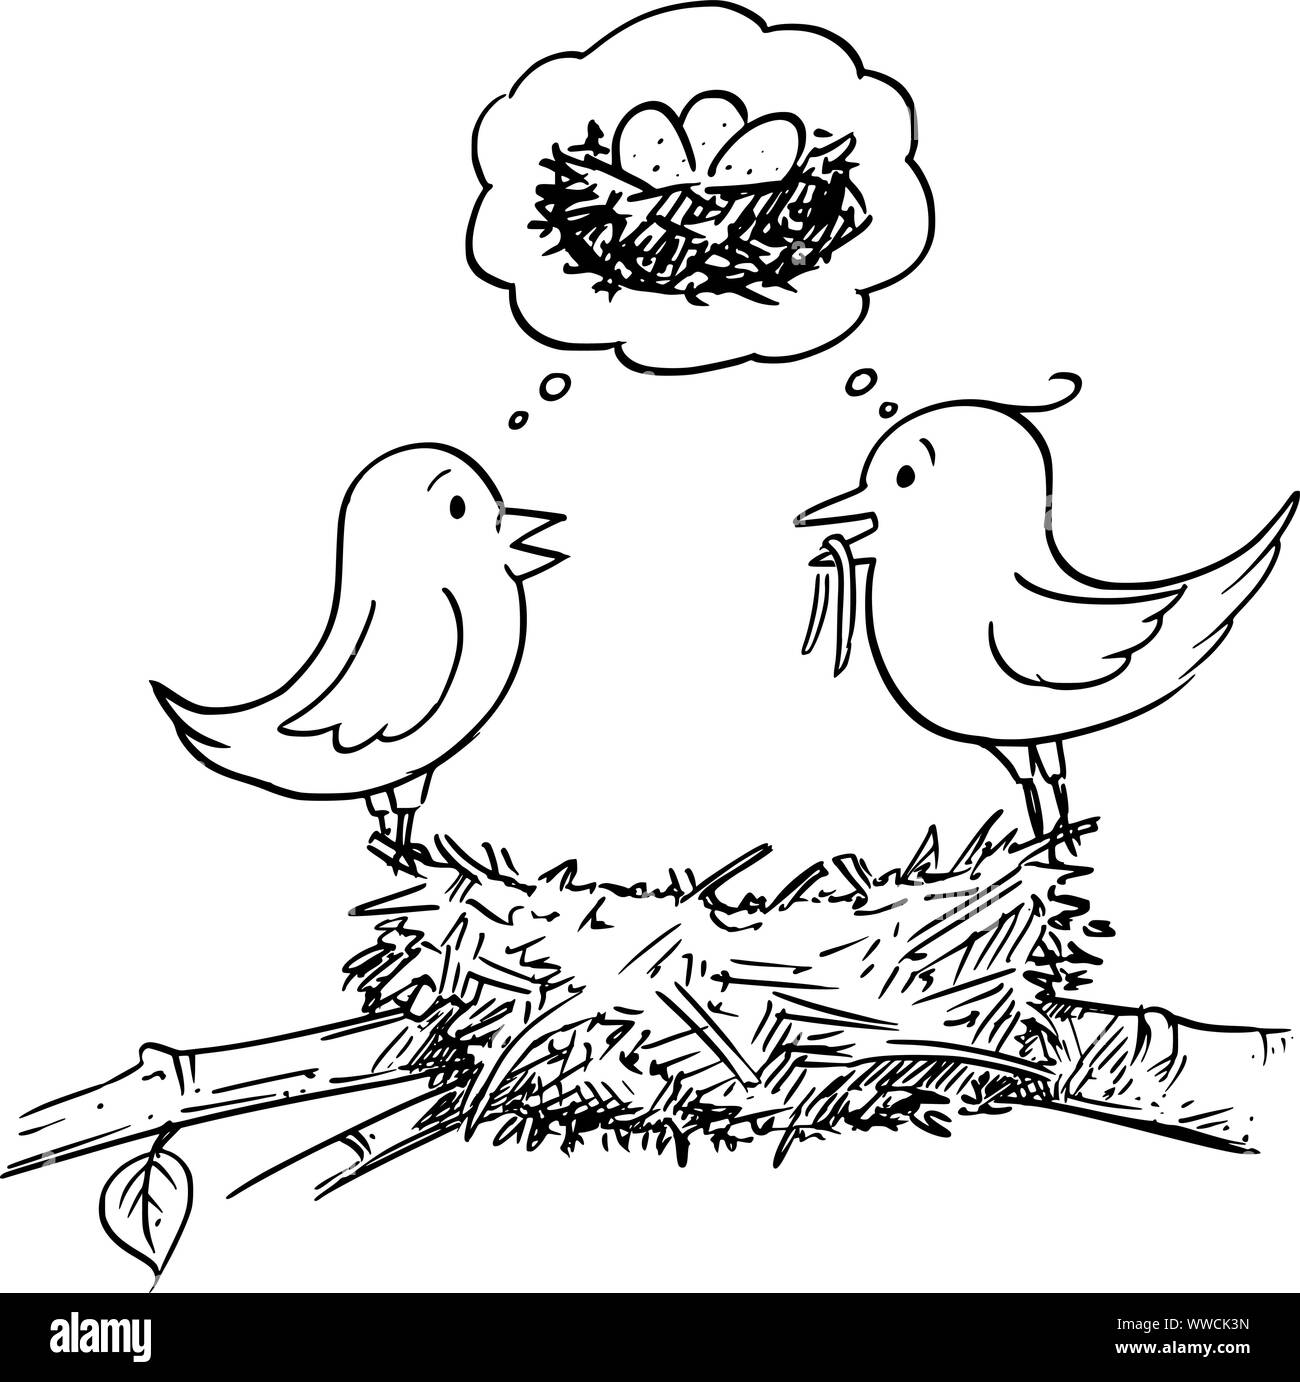 Vektor Komikbild konzeptionelle Darstellung der Paar männliche und weibliche Vögel Gebäude Nest und zusammen denken zu liegen Eier und Babies. Stock Vektor